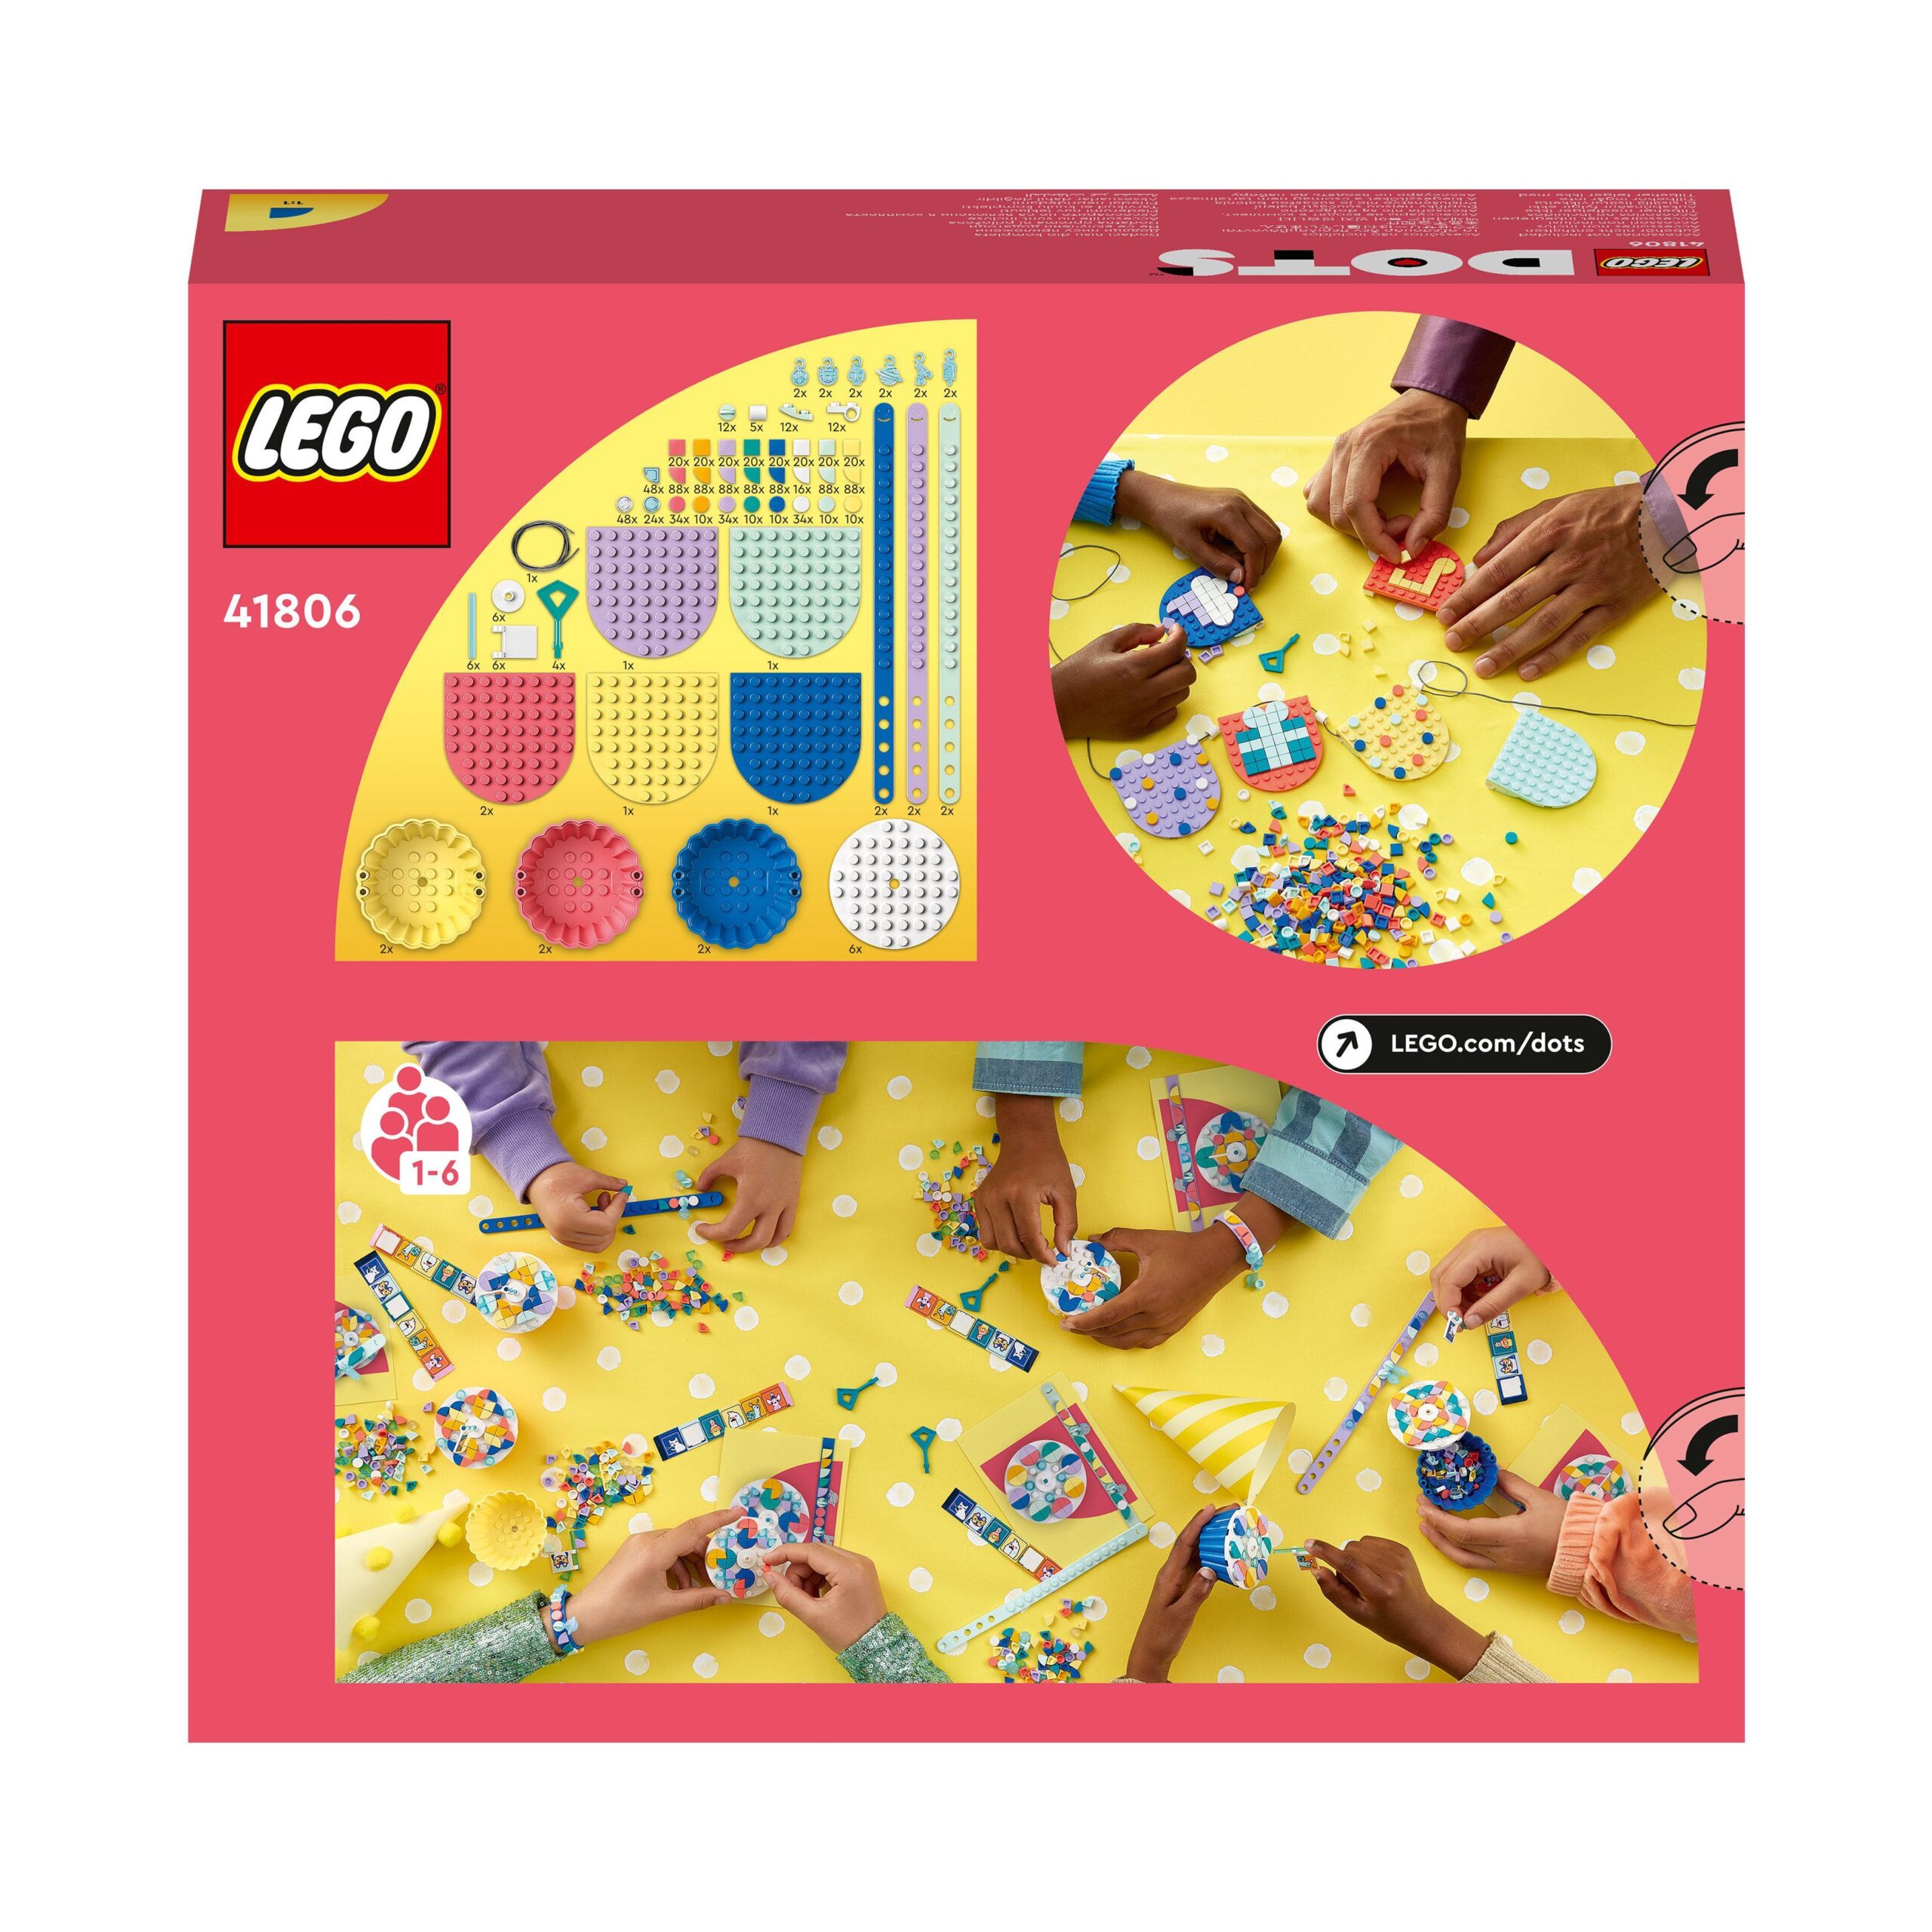 LEGO DOTS 41806 Grande Kit per le Feste, Giochi Festa Compleanno Bambini  Fai da Te con Cupcake, Braccialetti e Festoni - LEGO - DOTs - Set  mattoncini - Giocattoli